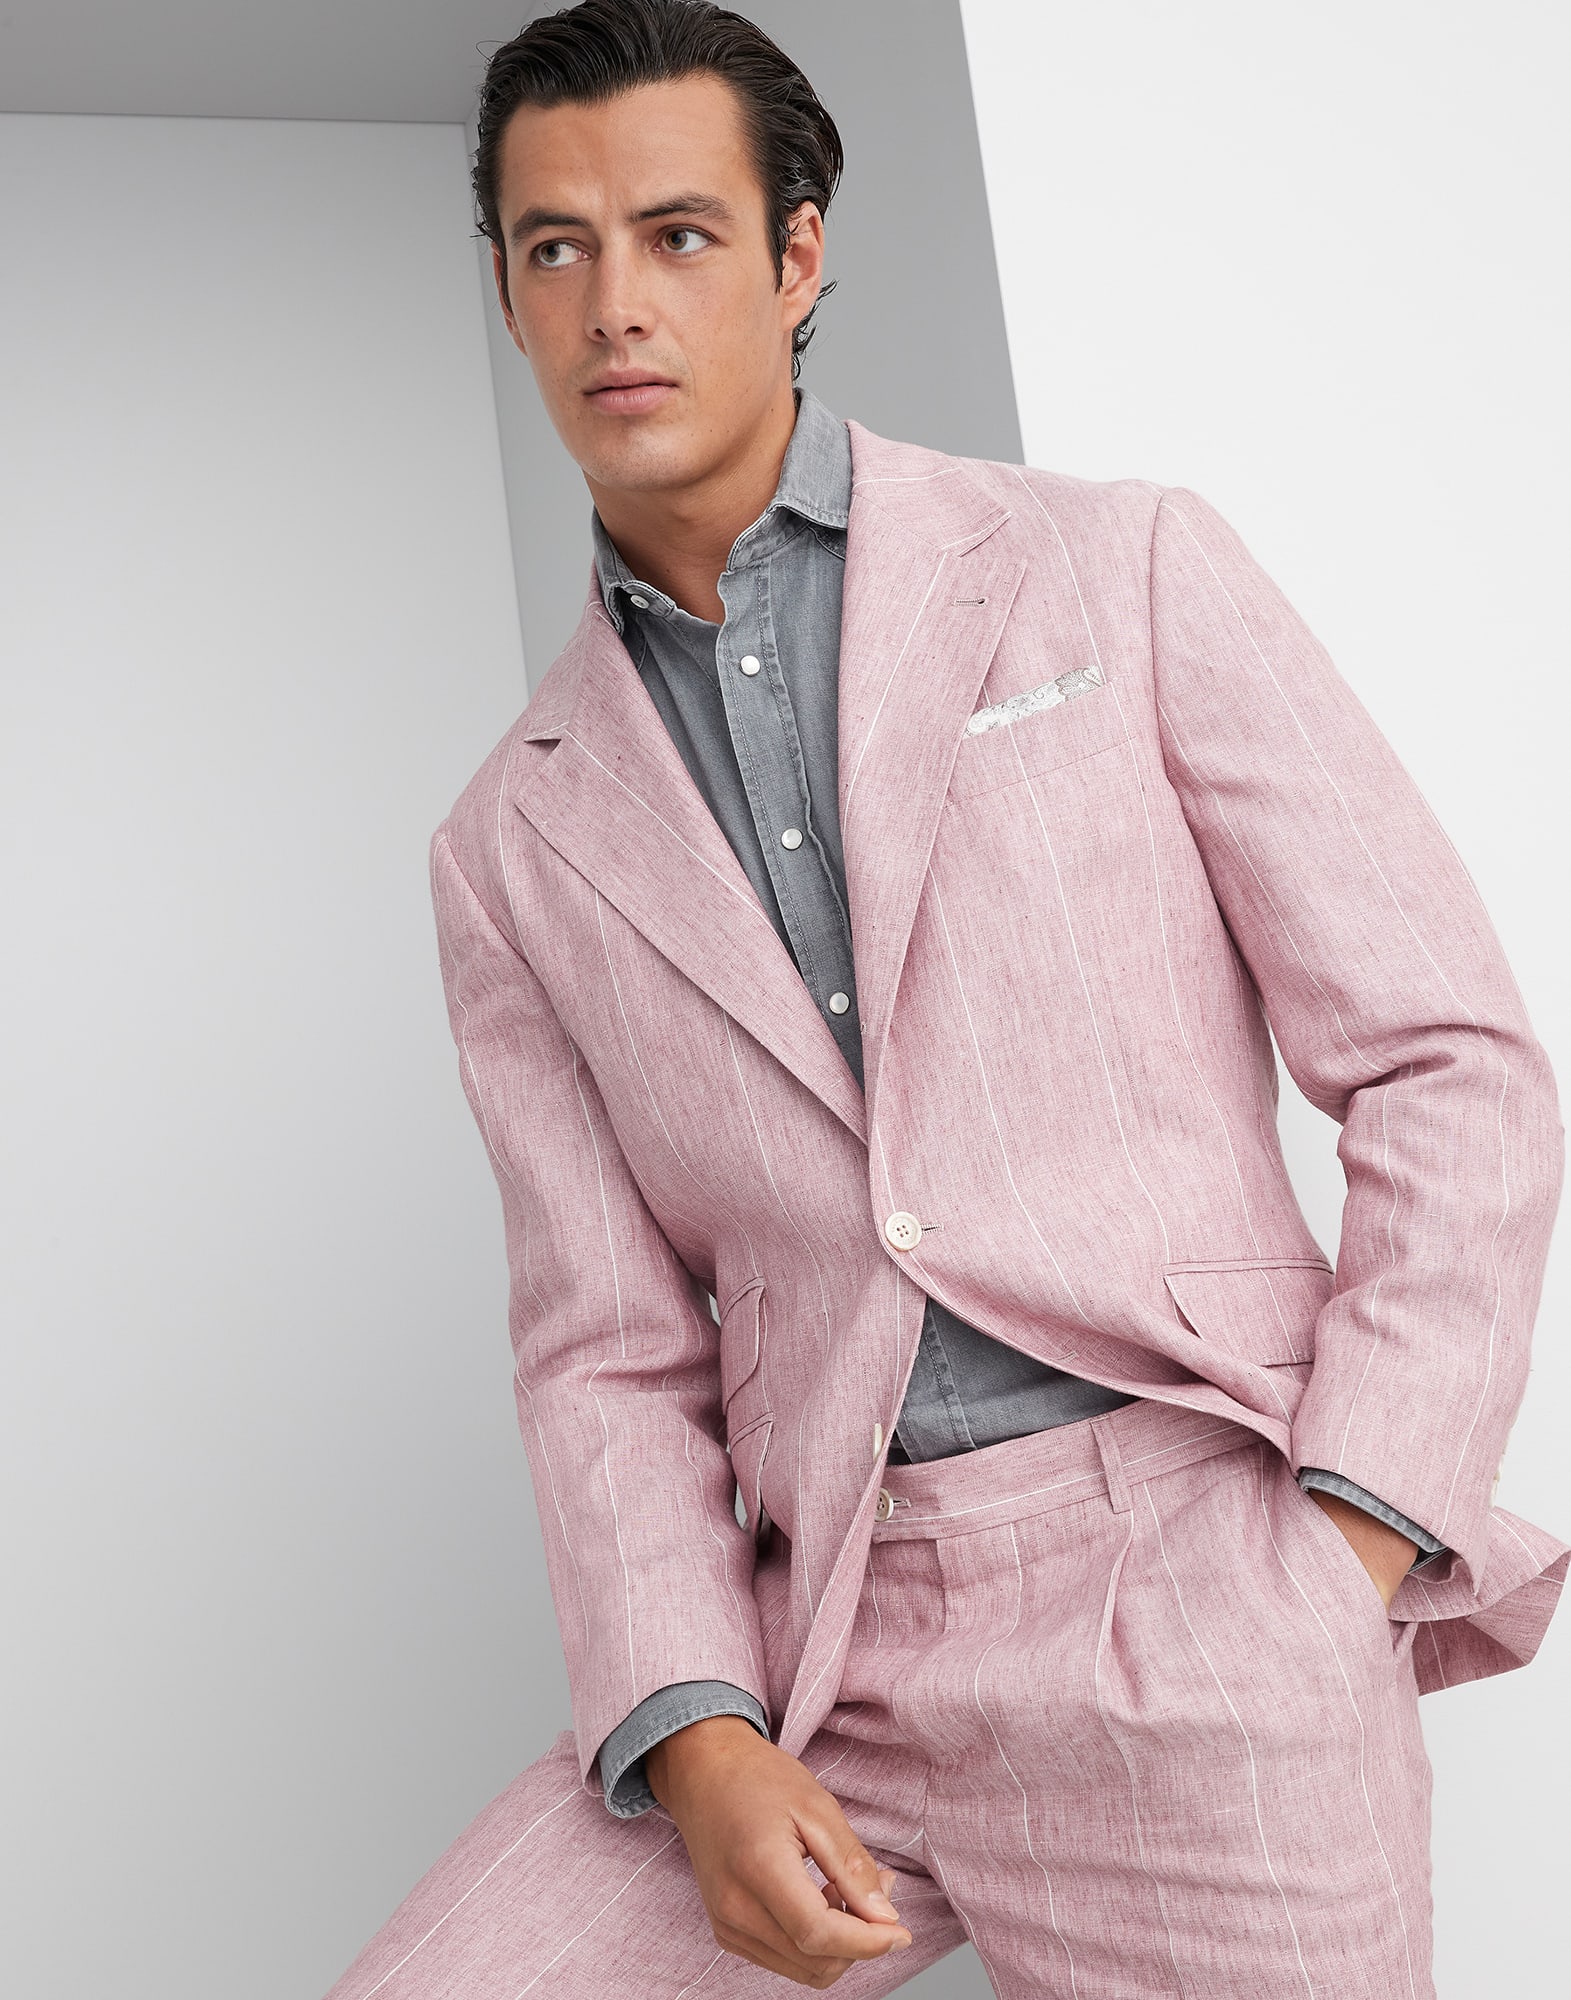 Deconstructed Cavallo blazer Pink Man -
                        Brunello Cucinelli
                    